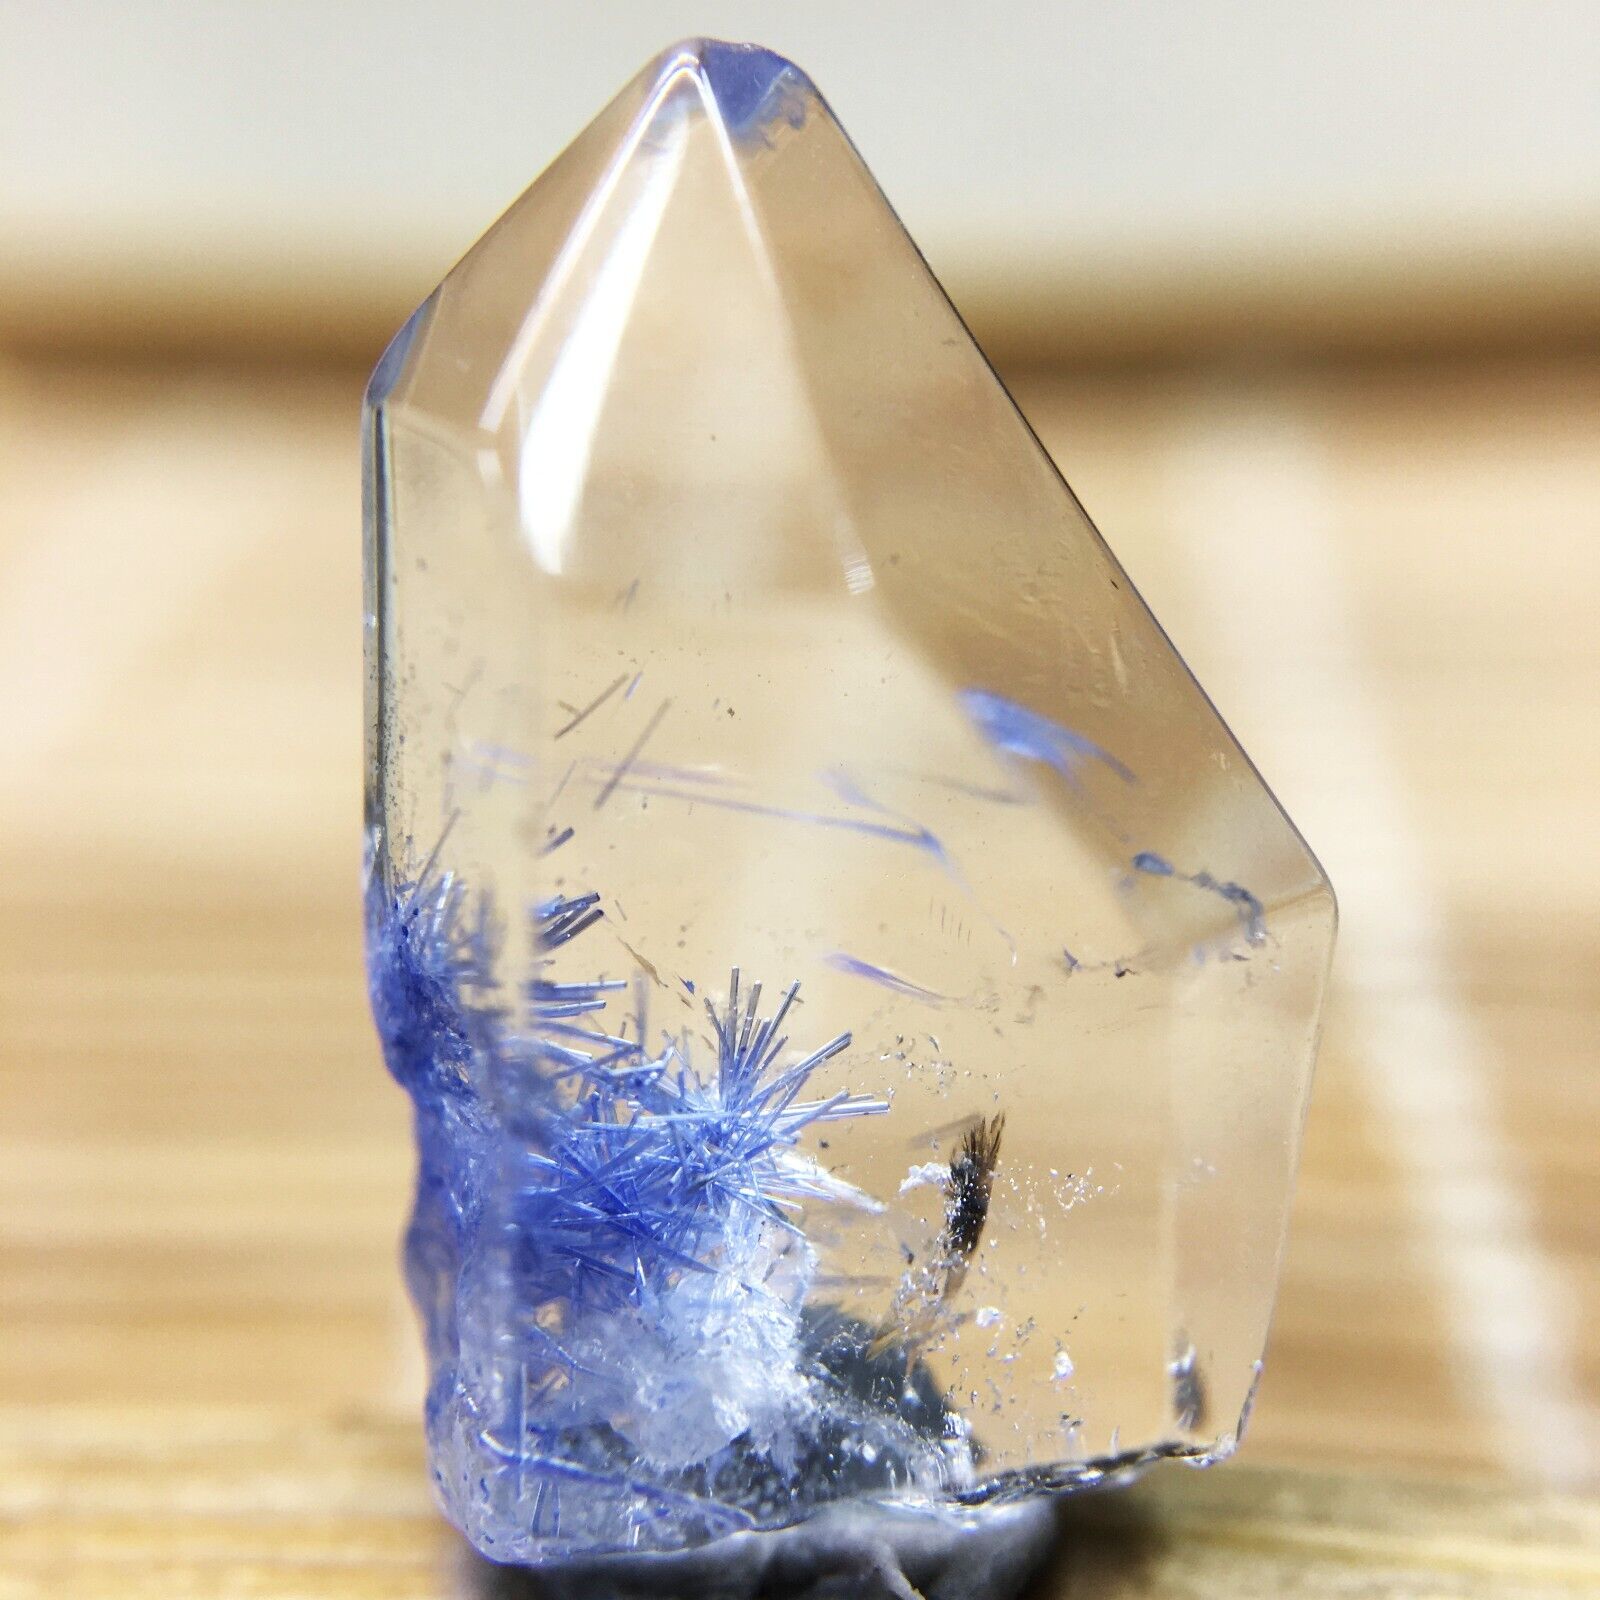 5.3Ct Very Rare NATURAL Beautiful Blue Dumortierite Quartz Crystal Specimen